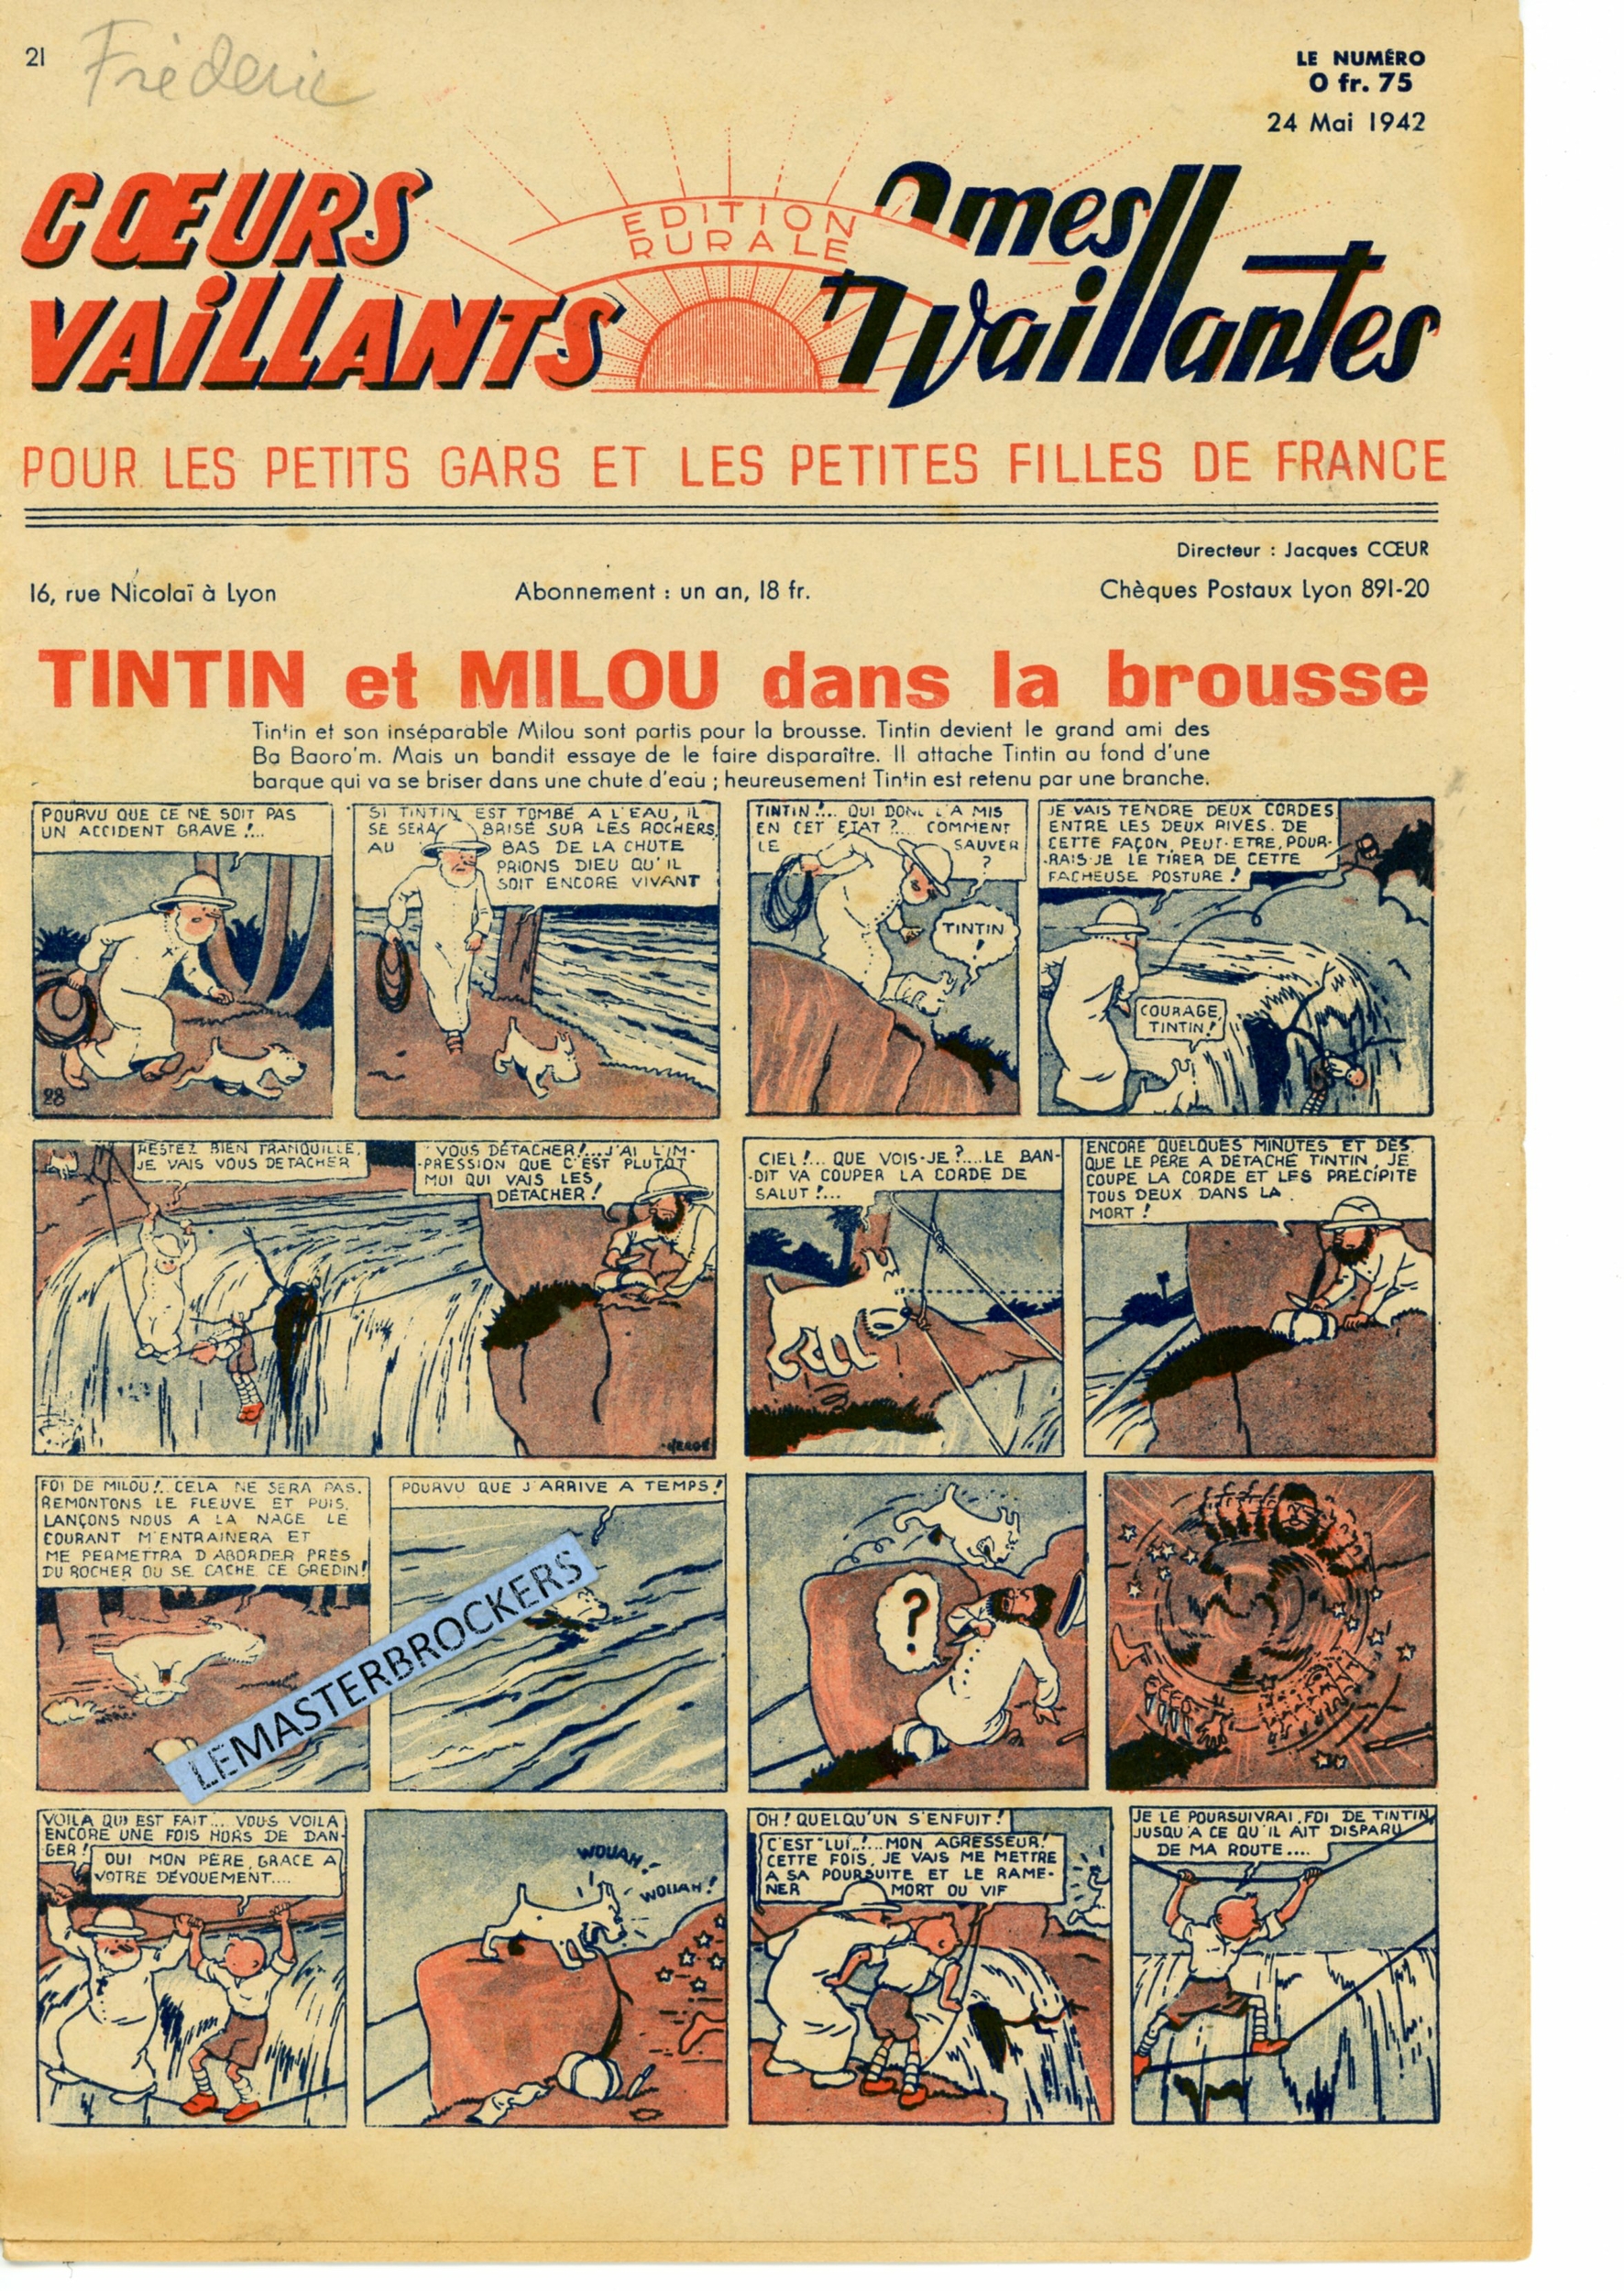 TINTIN ET MILOU DANS LA BROUSSE 1942 COEURS VAILLANTS 21  LEMASTERBROCKERS